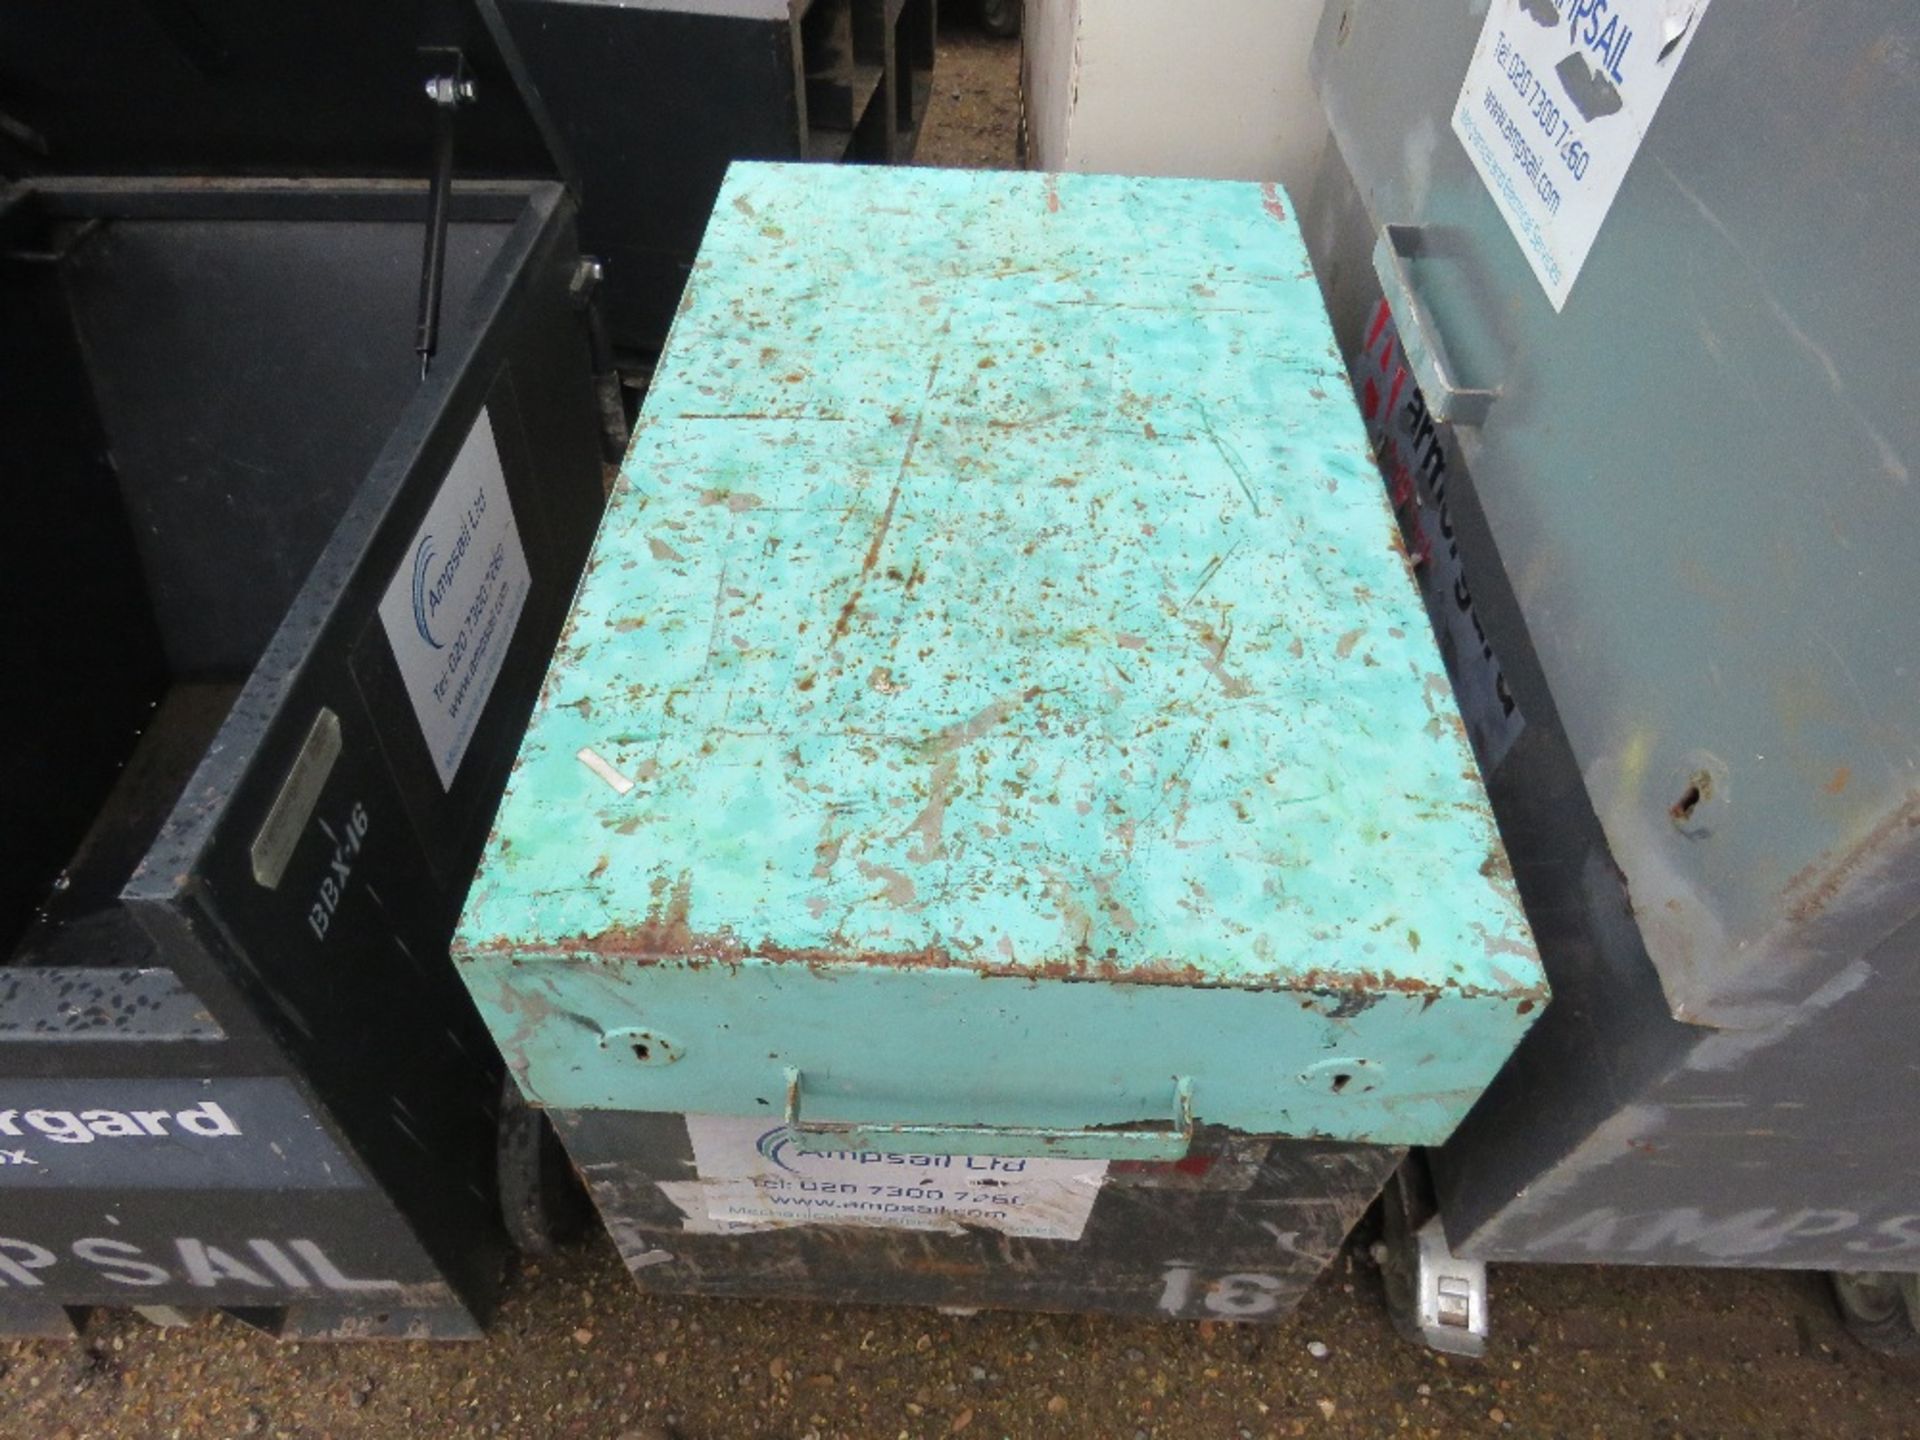 ARMORGARD HEAVY DUTY TOOL BOX BARROW LOCKED, NO KEYS. SOURCED FROM COMPANY LIQUIDATION. - Image 2 of 2